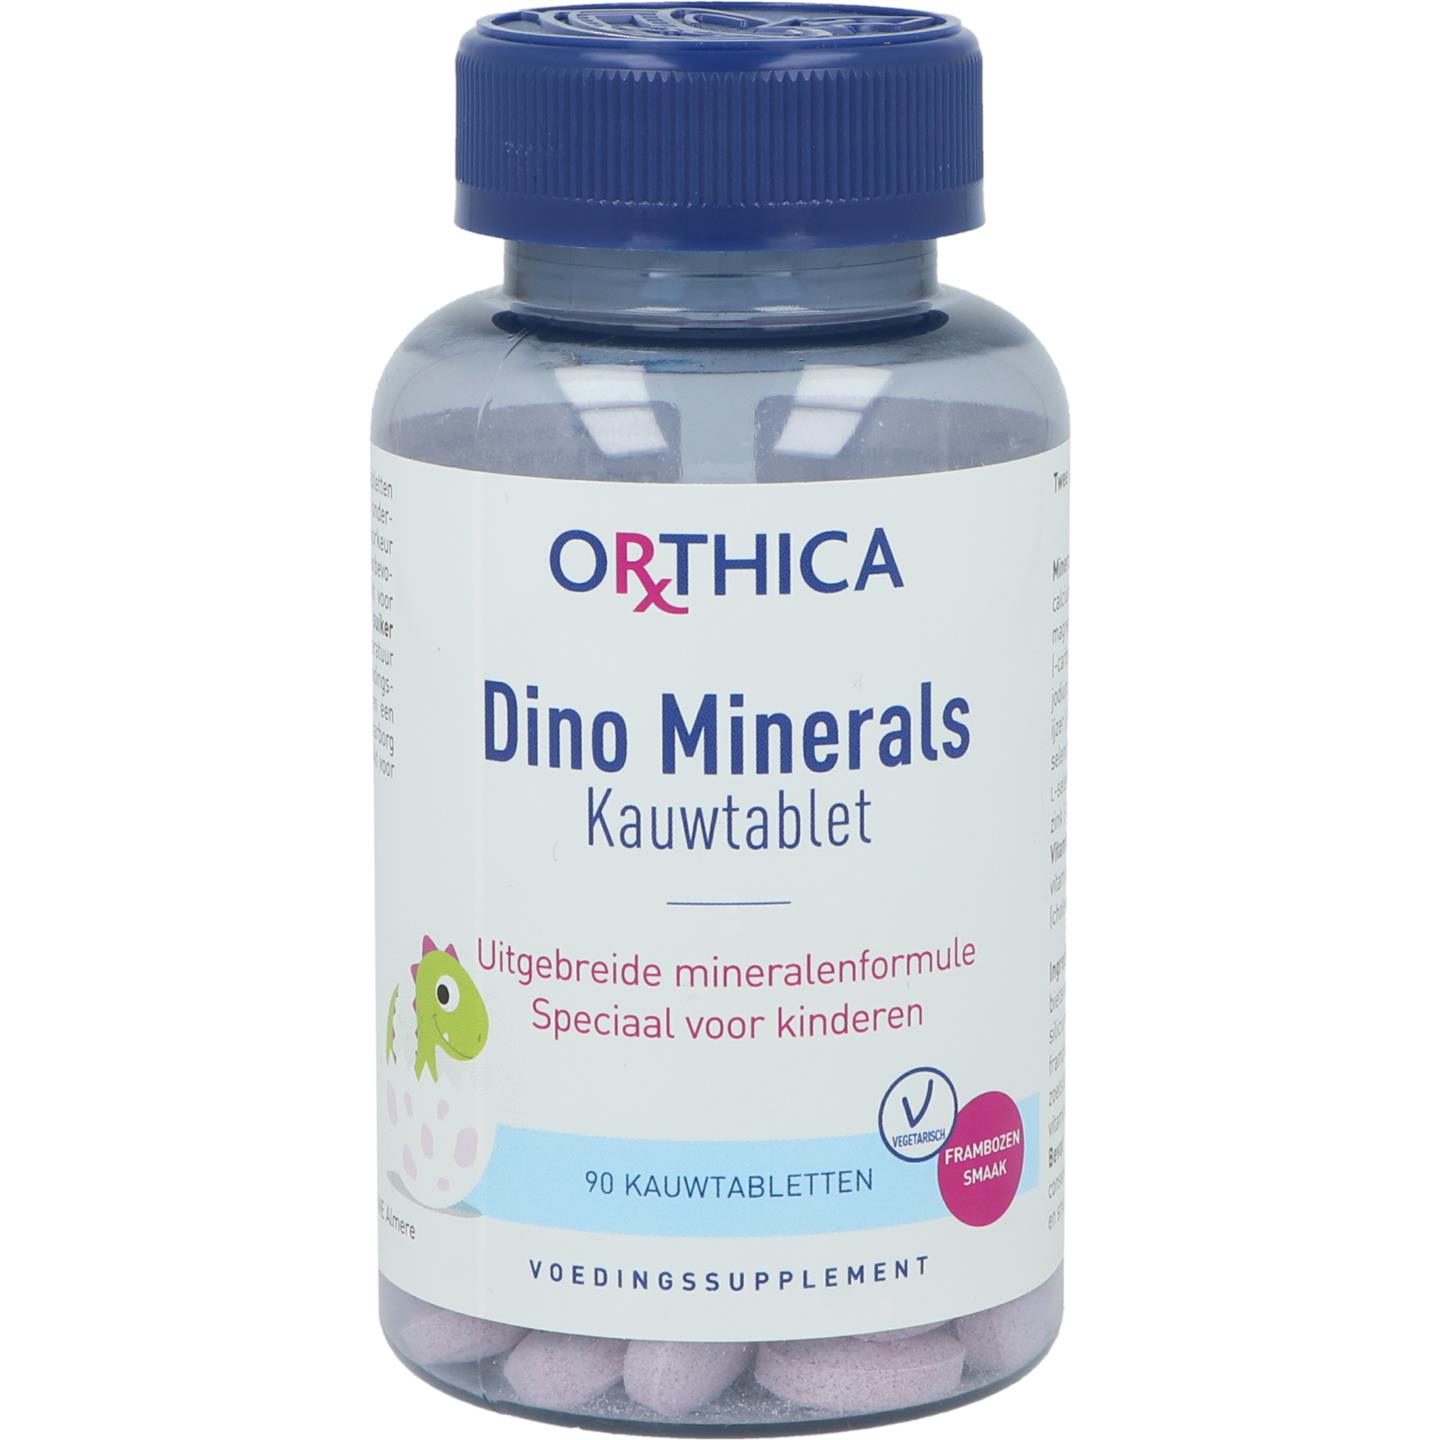 Dino Minerals